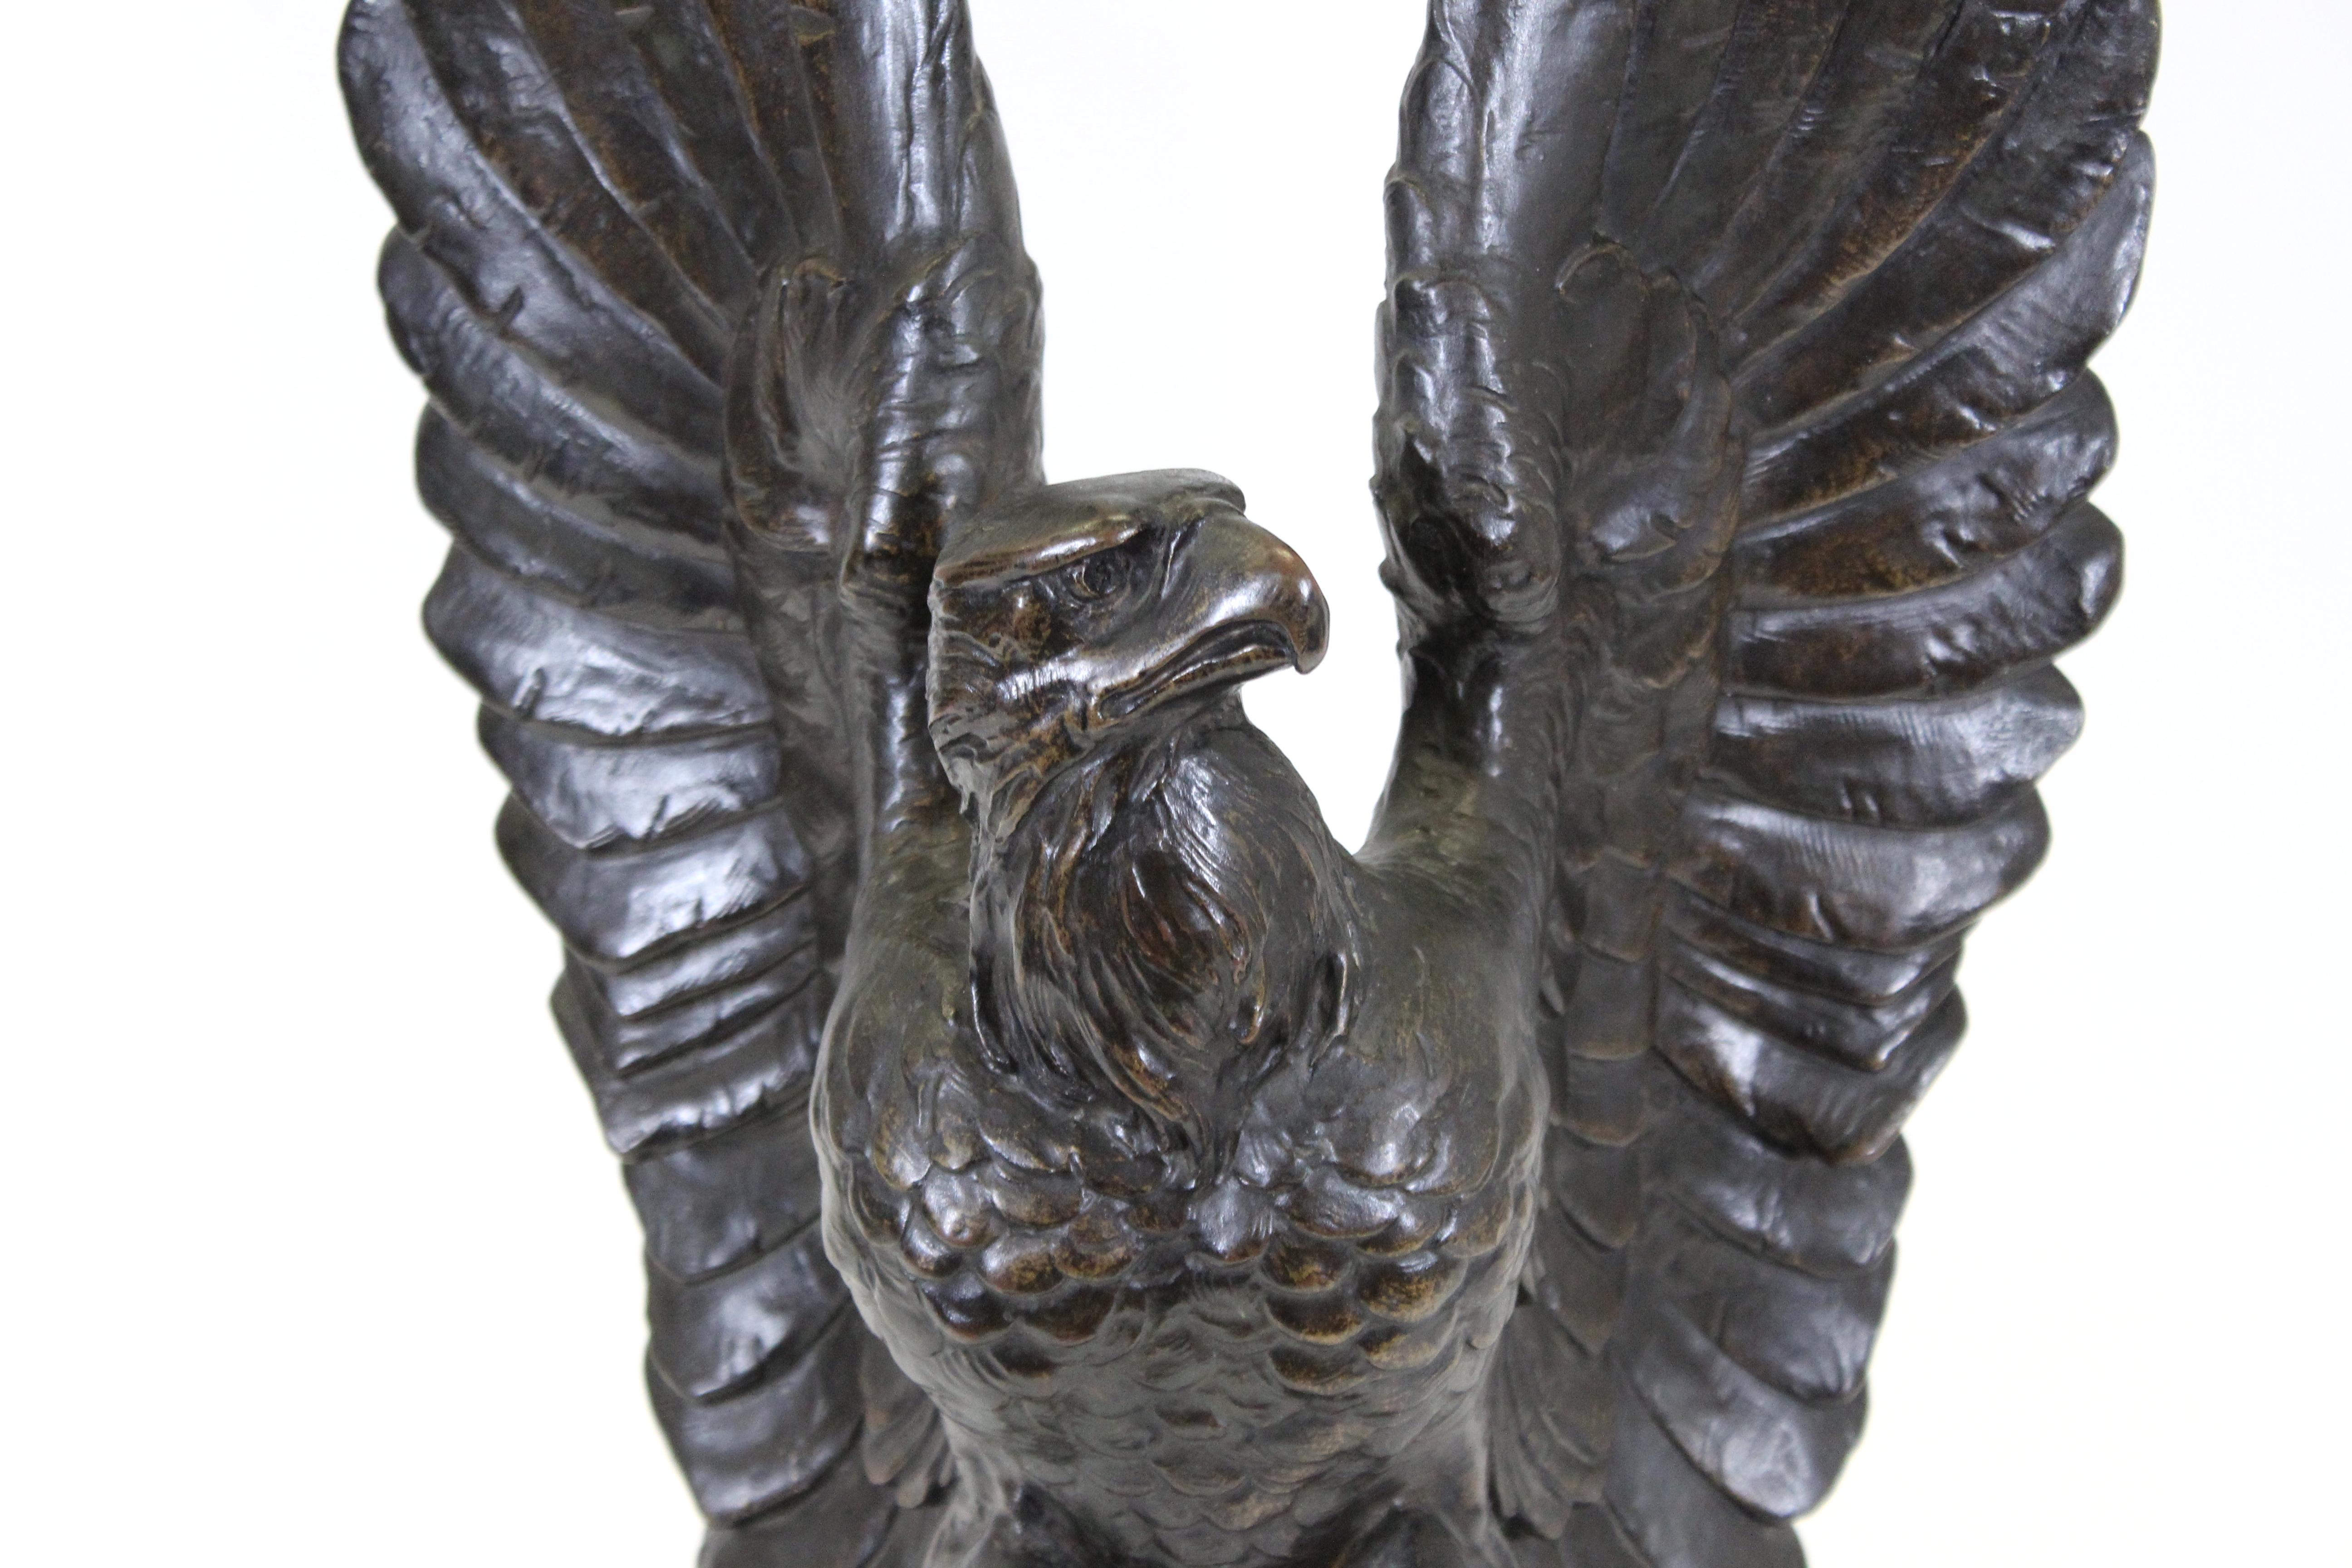 Sculpture animalière en bronze lourd de la Belle Époque représentant un aigle aux ailes déployées, monté sur une étroite base ébénisée à gradins. La pièce a été réalisée par un sculpteur germano-américain probablement à la fin du 19e ou au début du